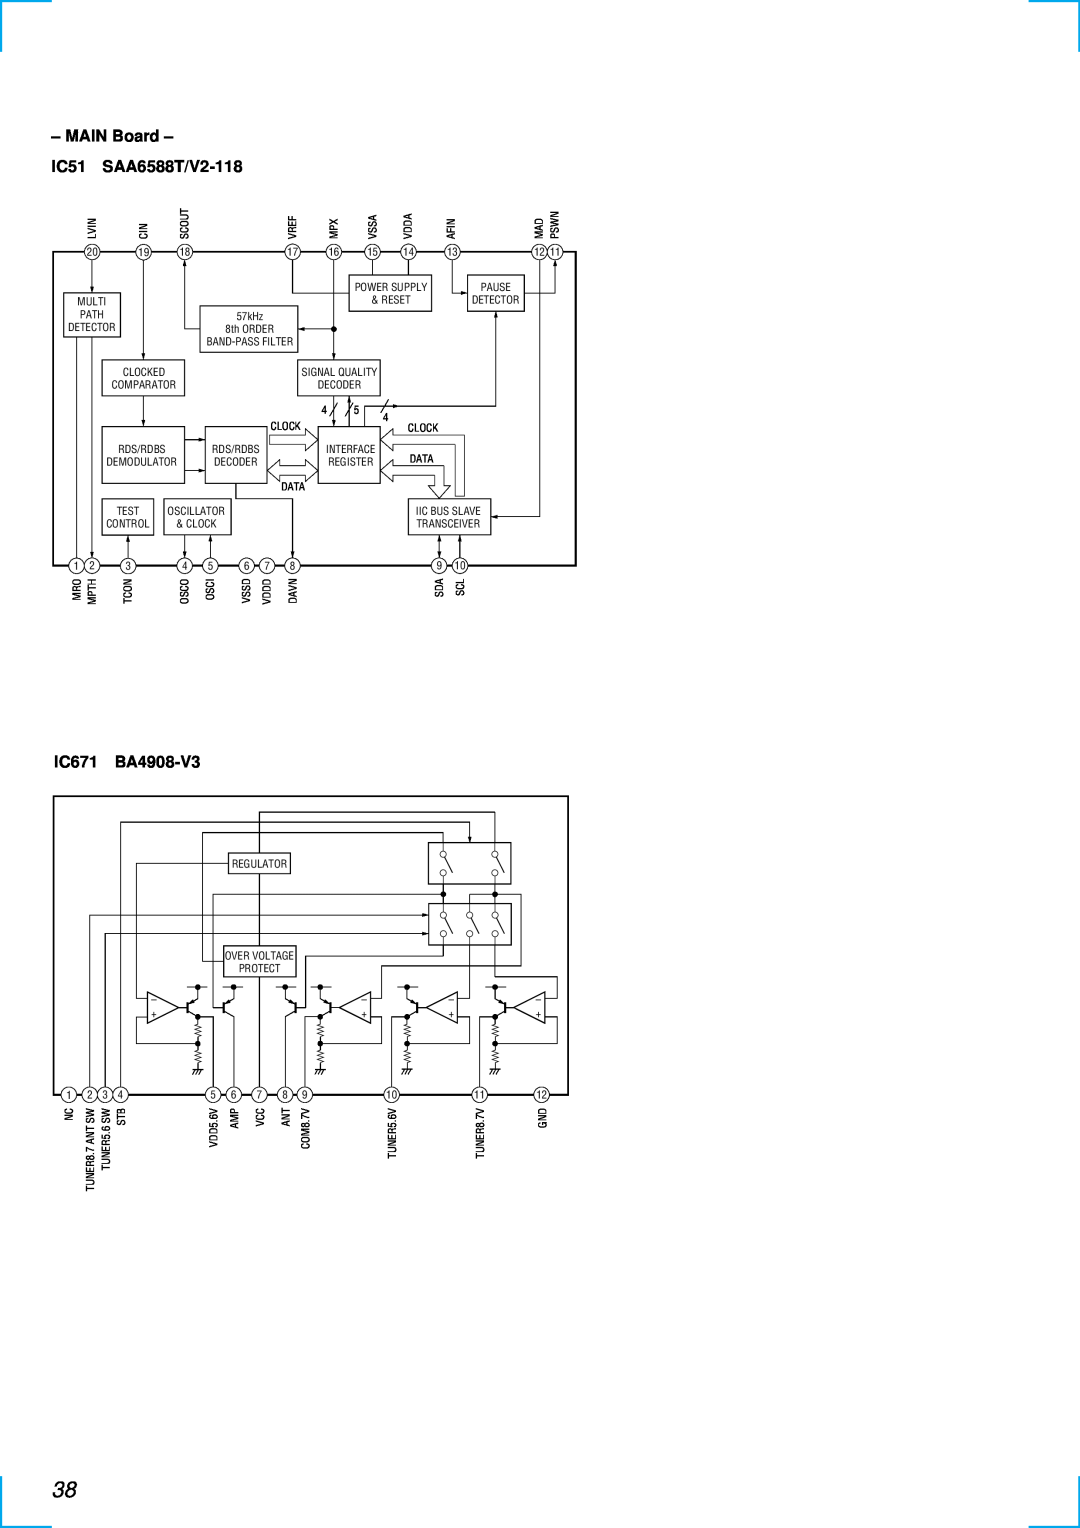 Sony MDX-C6500RX service manual MAIN Board, IC51, SAA6588T/V2-118, IC671, BA4908-V3 